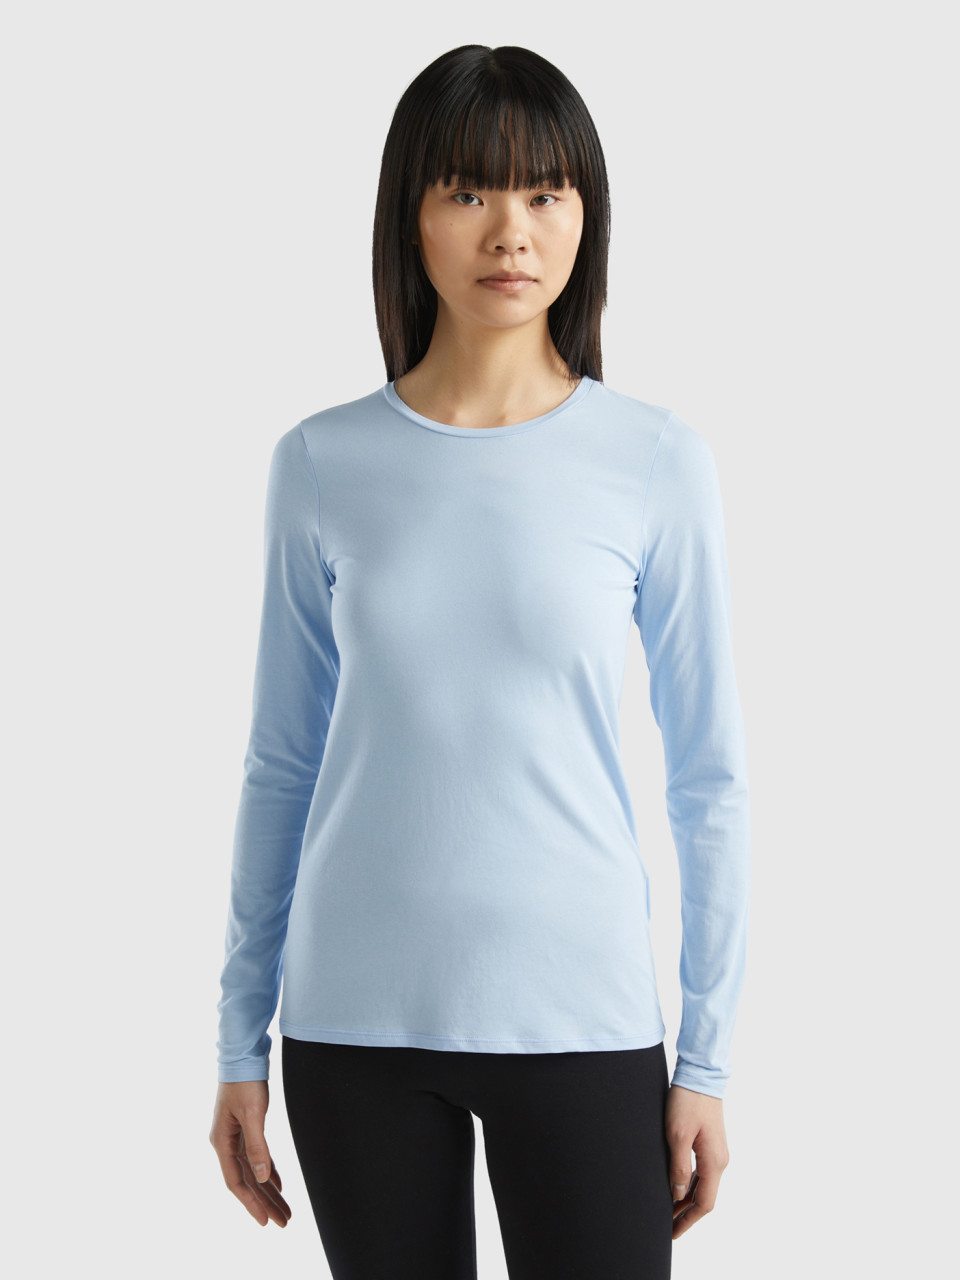 Benetton, Long Sleeve Super Stretch T-shirt, Sky Blue, Women